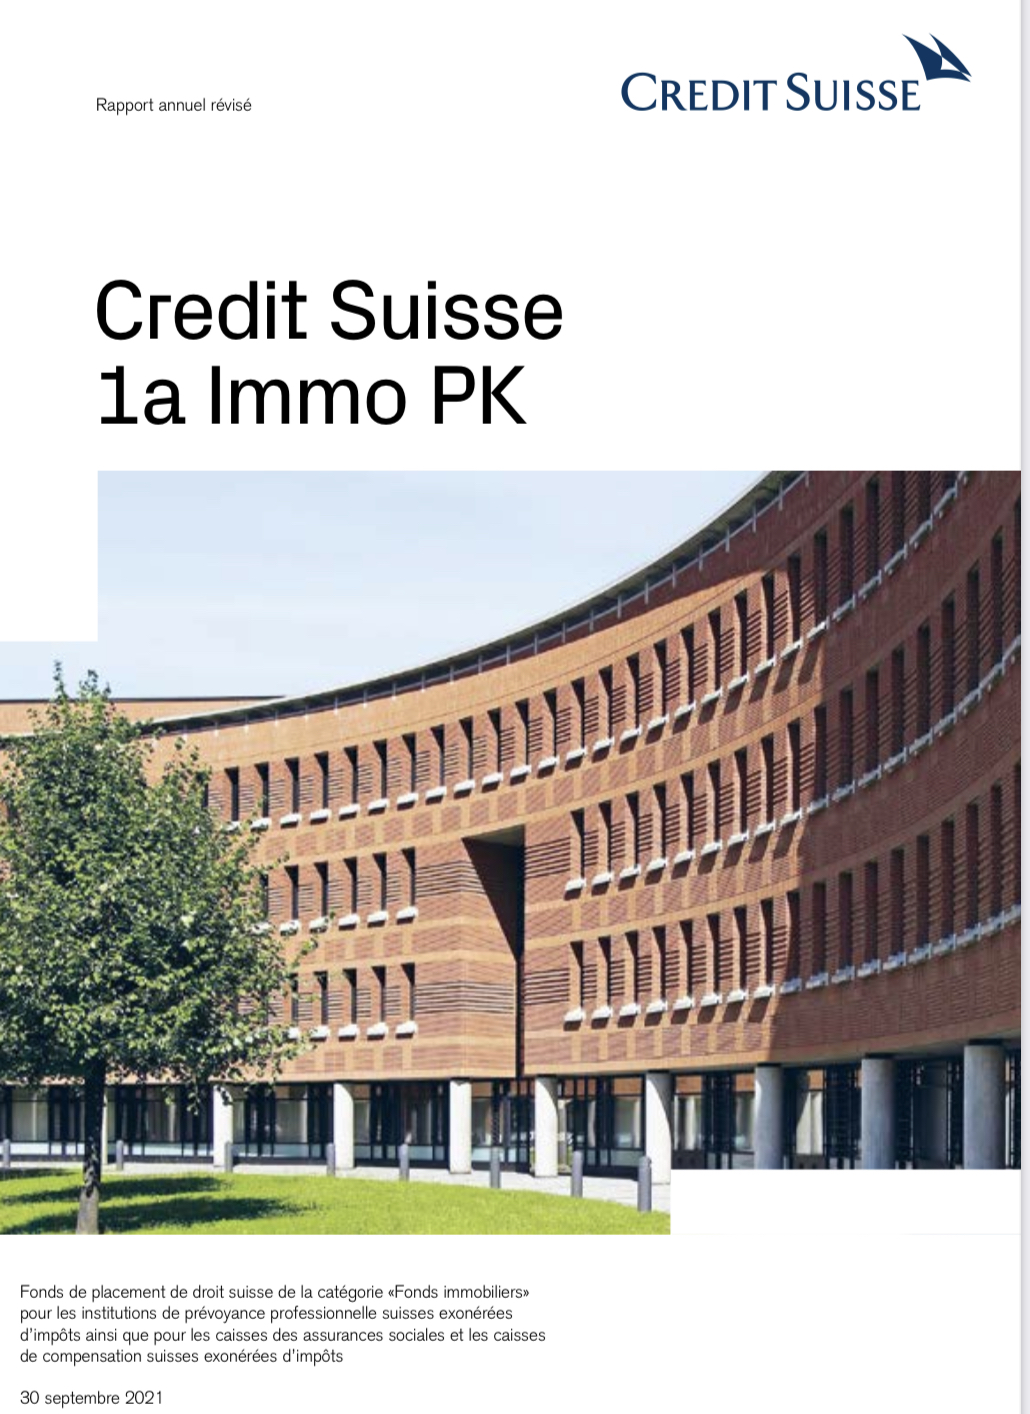 Credit Suisse 1a Immo PK reporte sa cotation en bourse